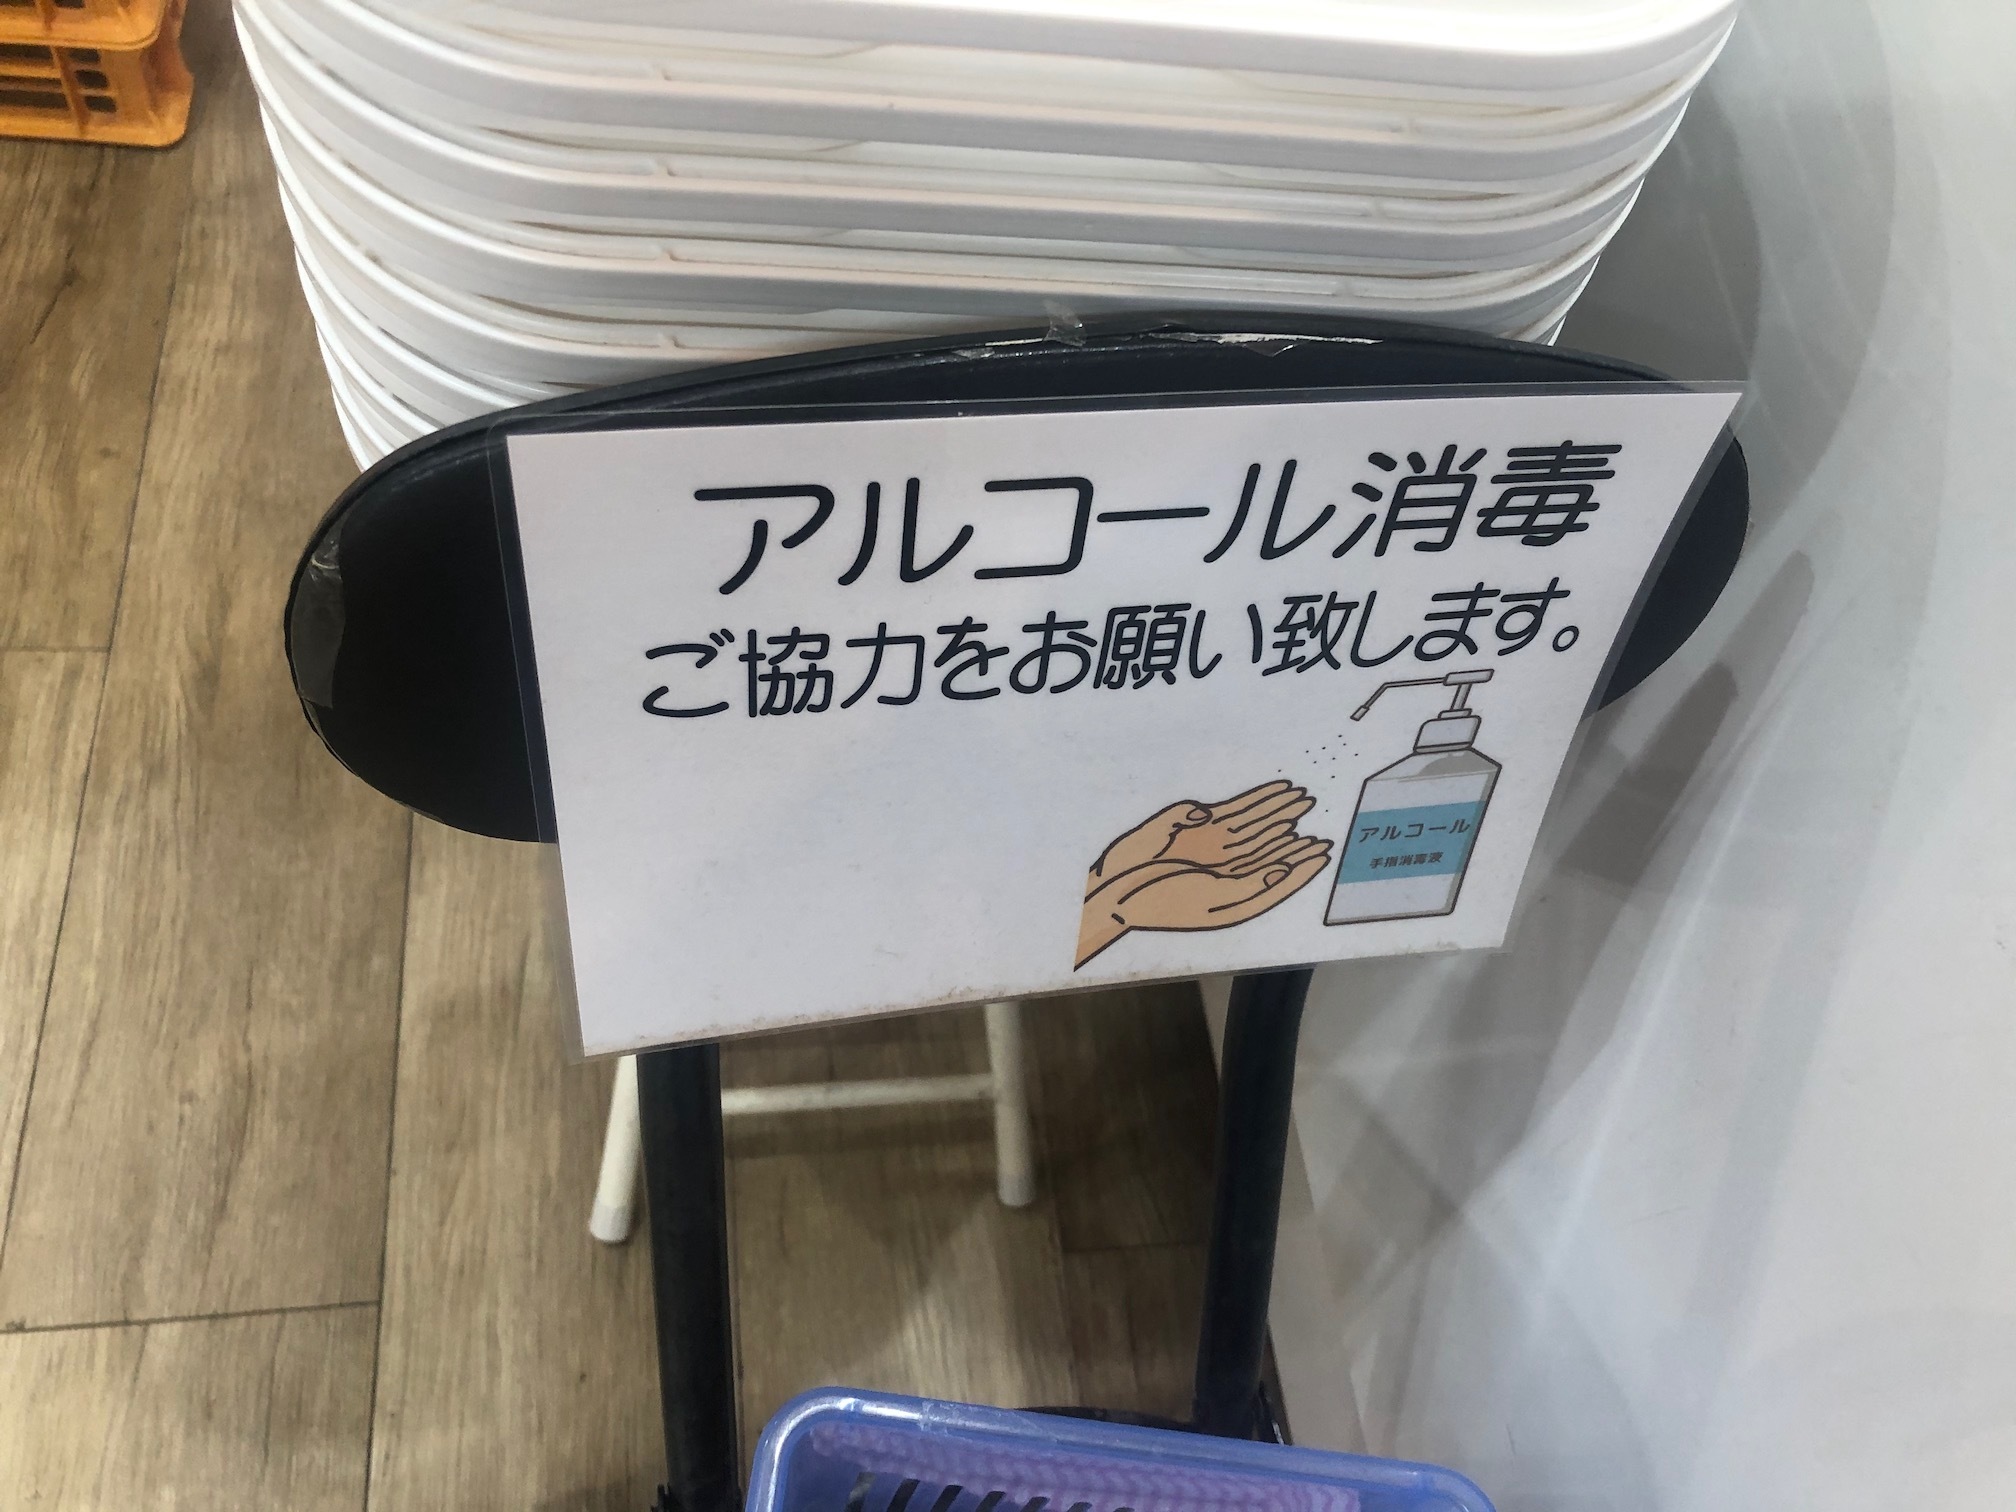 麺テイスティング・カフェショップ MENSTA